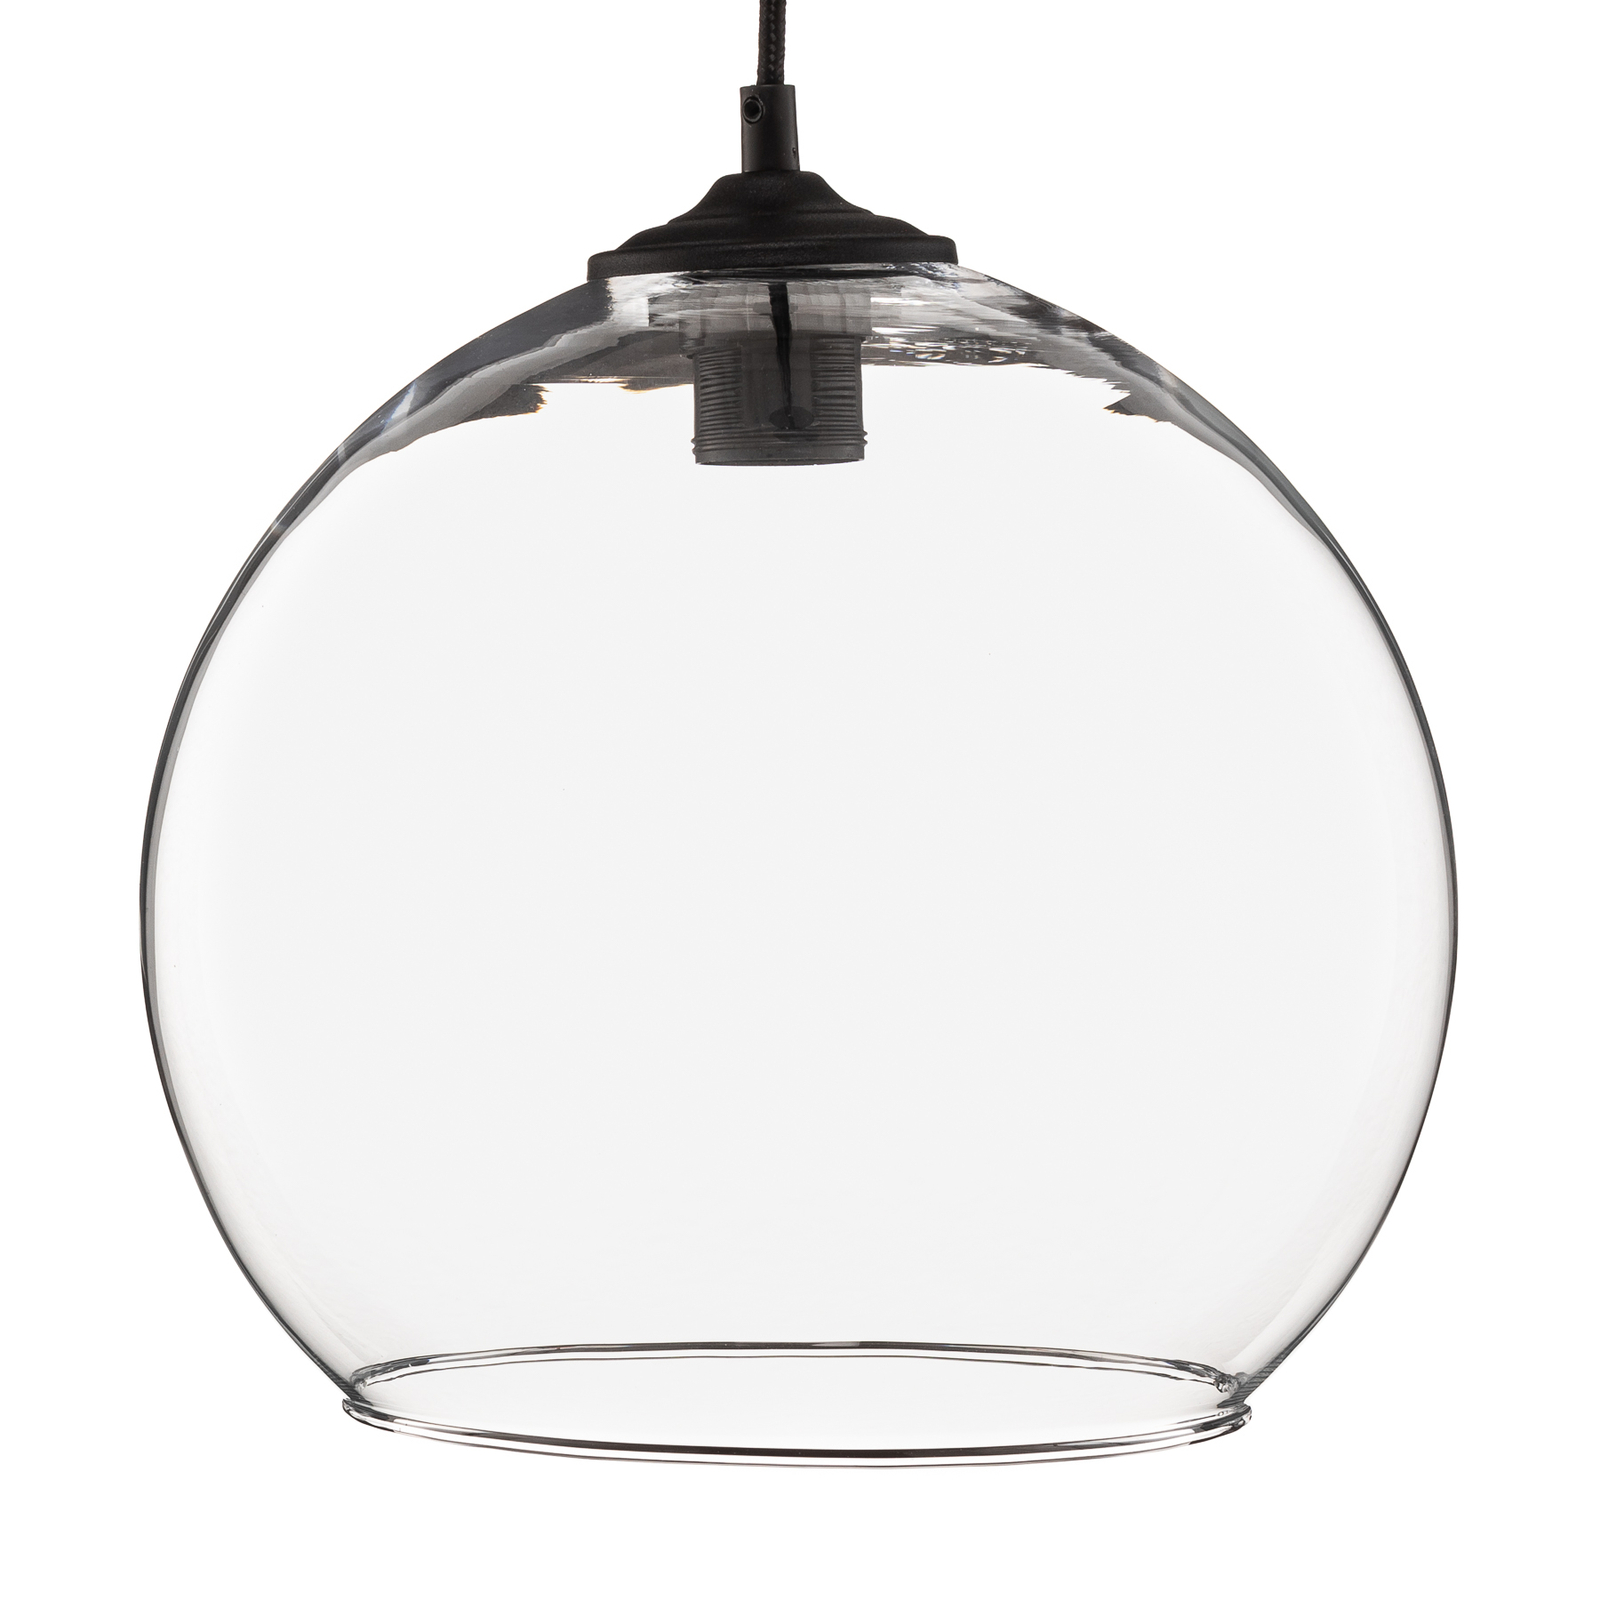 Suspension Ball Abat-jour en verre transparent Ø 30cm